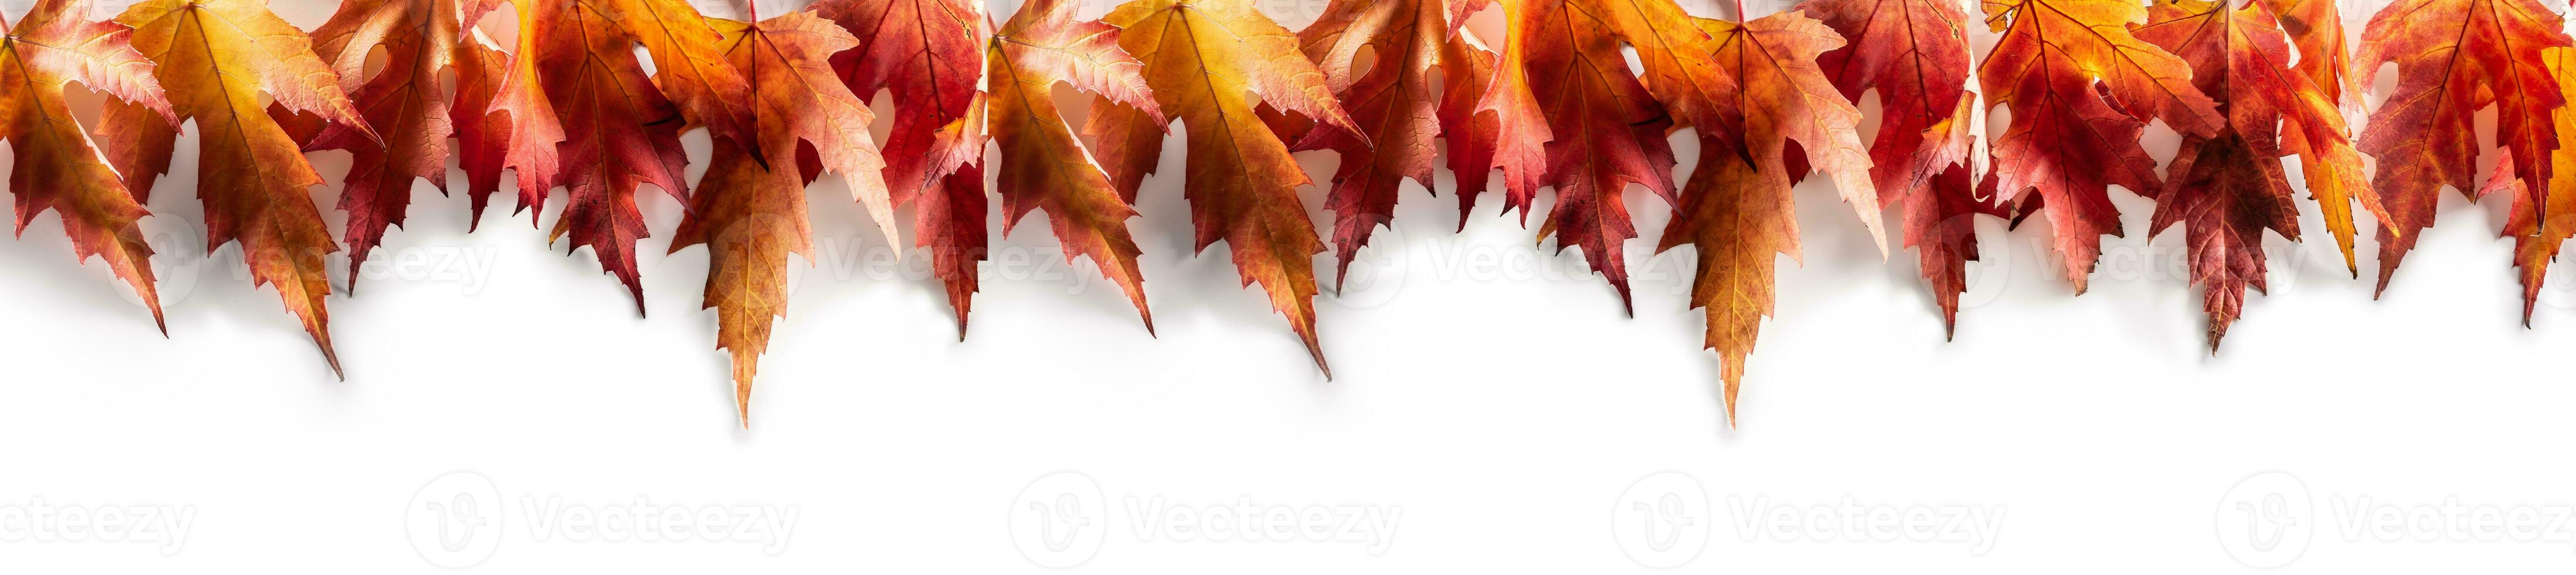 érable feuilles sur une blanc Contexte comme une panoramique bannière photo